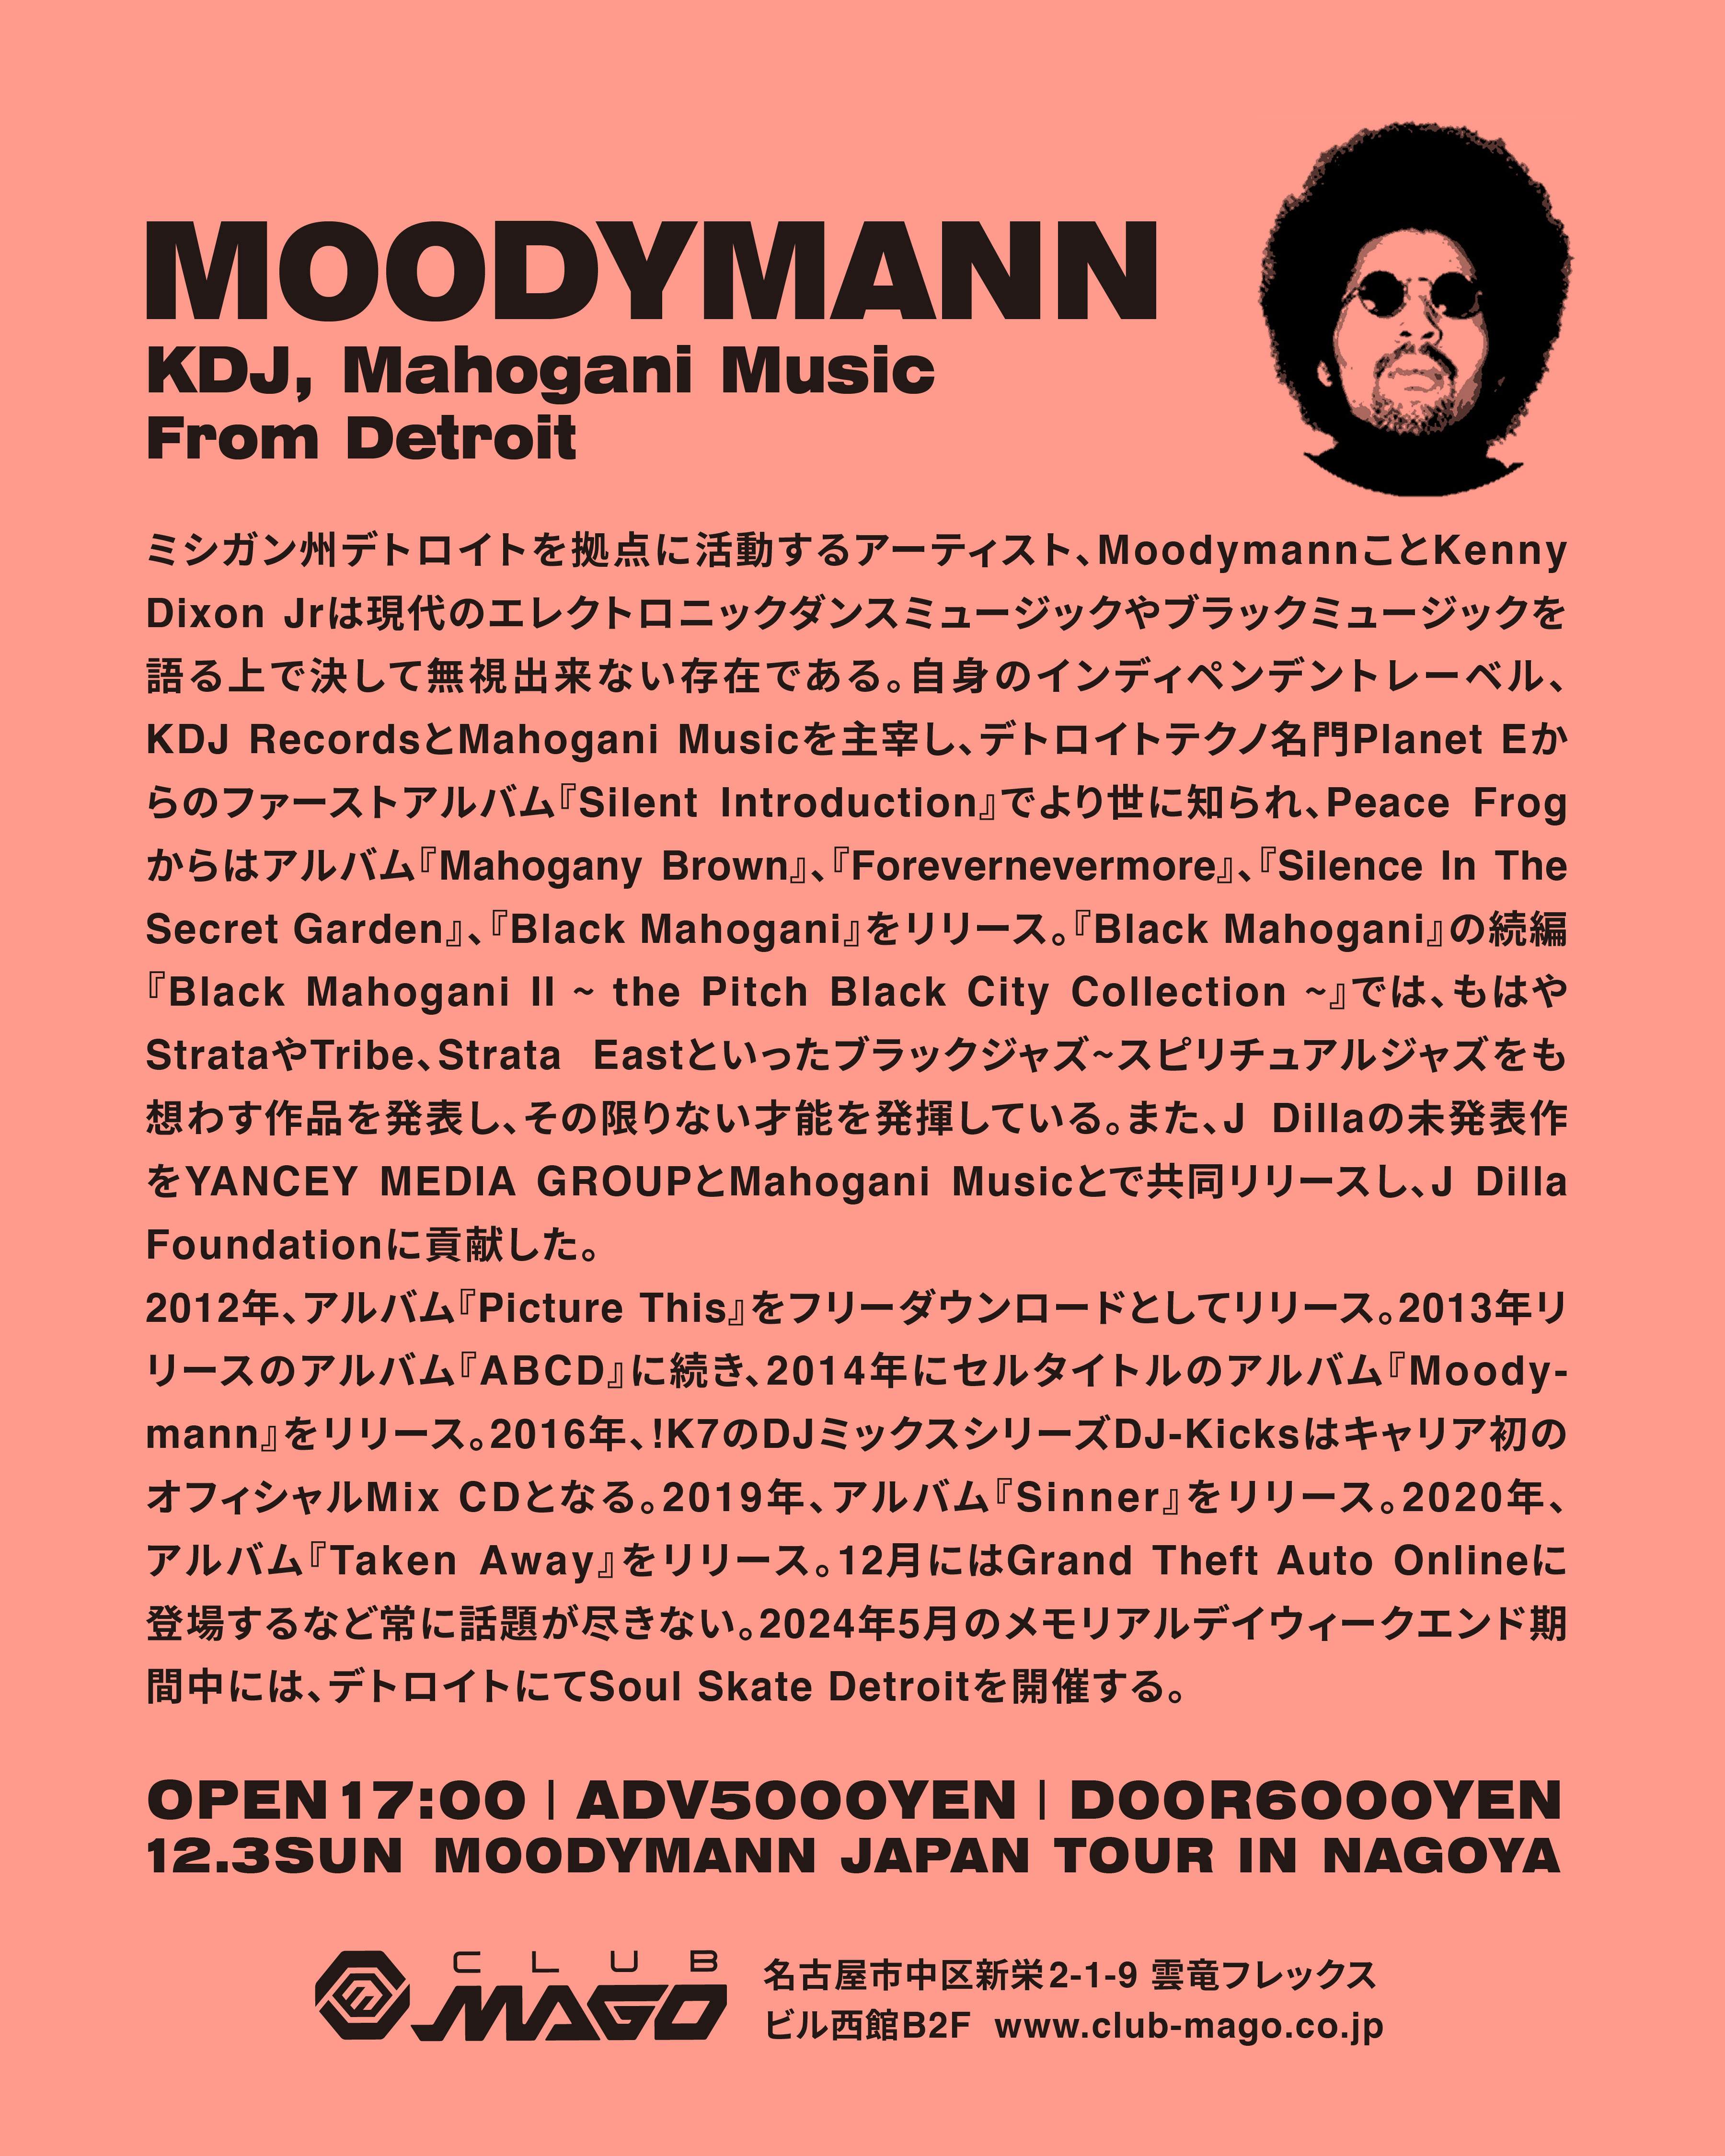 Moodymann Japan Tour in Nagoya - フライヤー裏